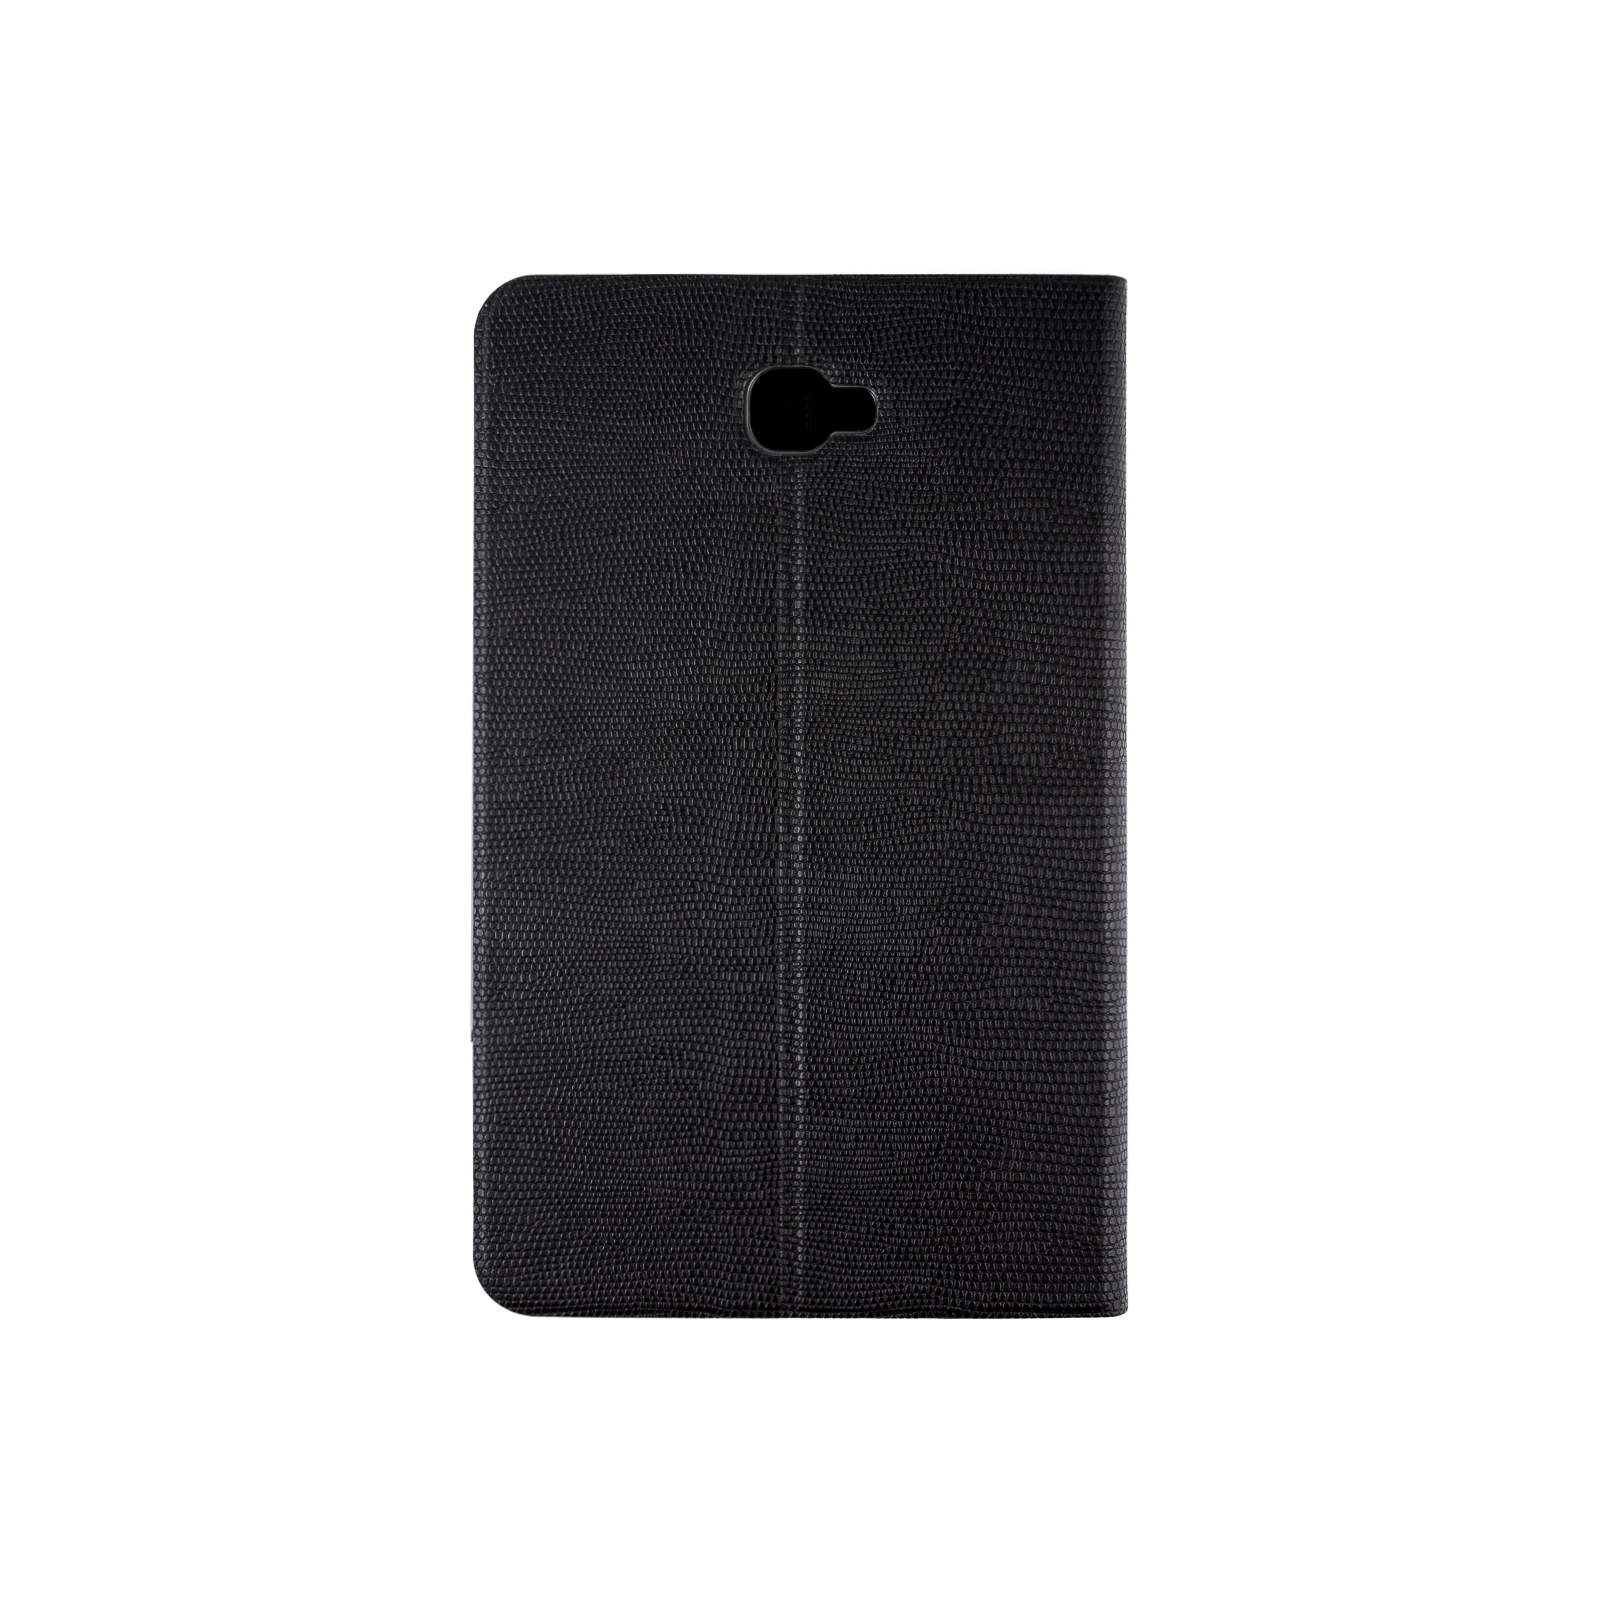 Чехол для планшета Grand-X для Samsung Galaxy Tab A 10.1 T580/T585 Lizard skin Black (STC - SGTT580LB) изображение 2